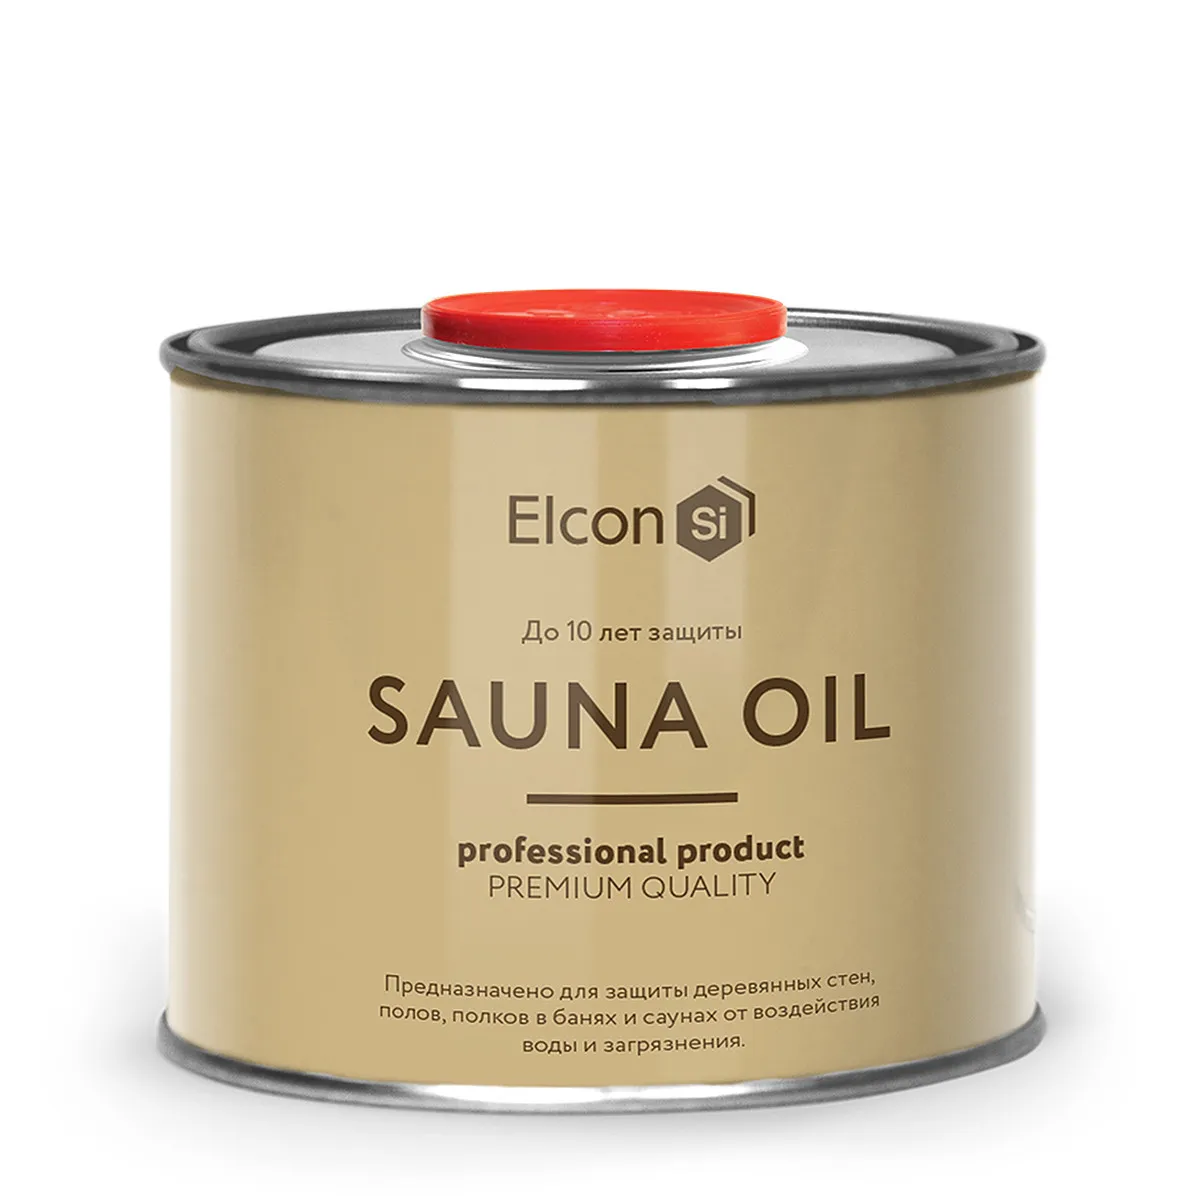 Масло для защиты древесины в банях и саунах Sauna Oil, 0,5 л#1